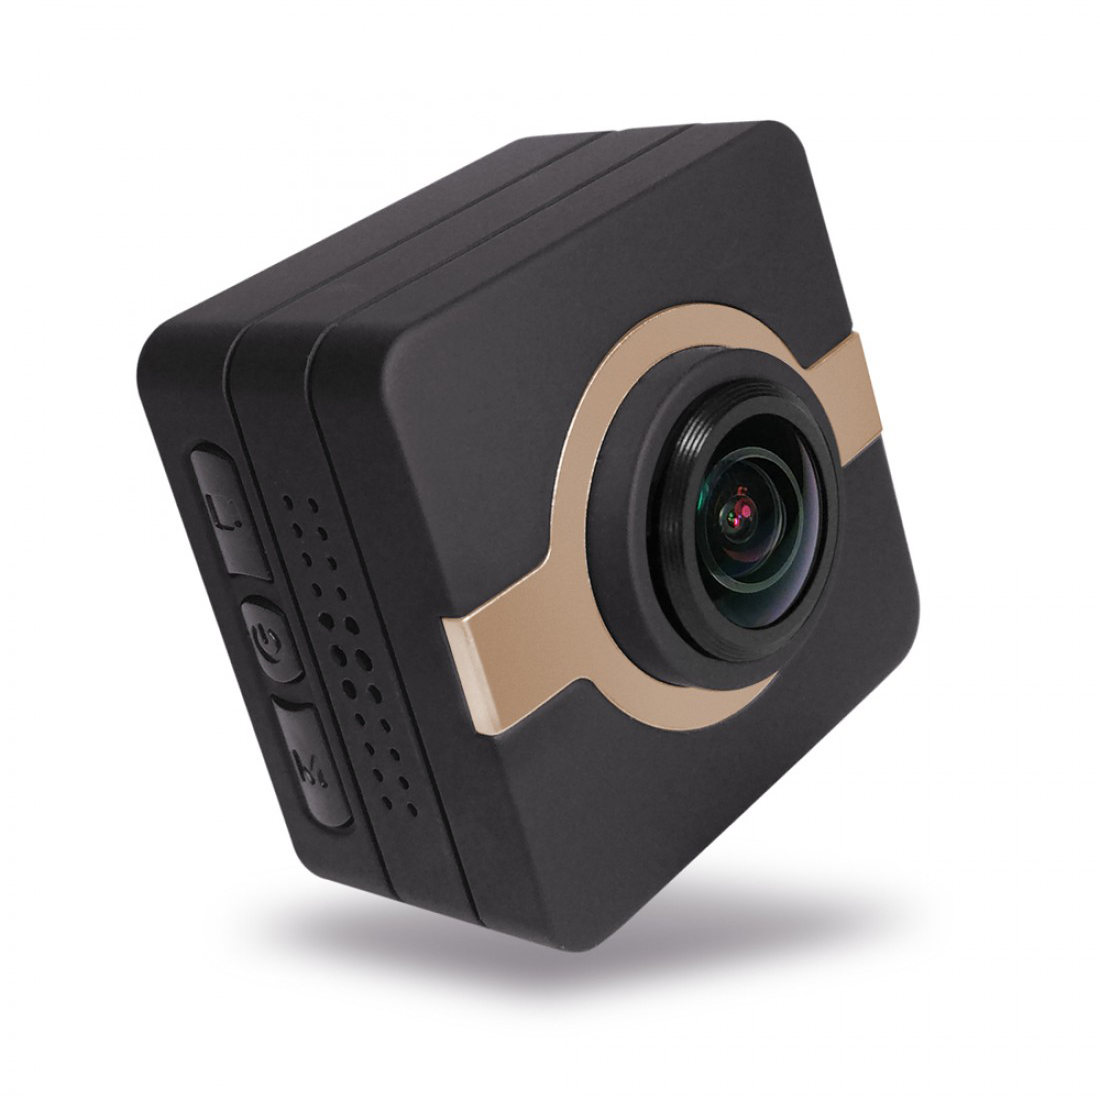 Matecam X1 Mini Action Camera autós műszerfal kamera kamera rögzítő 4K-HI Ultra HD vízálló DV kamera 16MP 160 fokos széles látószögű WIFI/G-szenzor/giroszkóp stabilizátor/mozgásérzékelés/távirányító Mini DVR autókulcsok mikro RC kamera kerékpáros sisak kamera barna